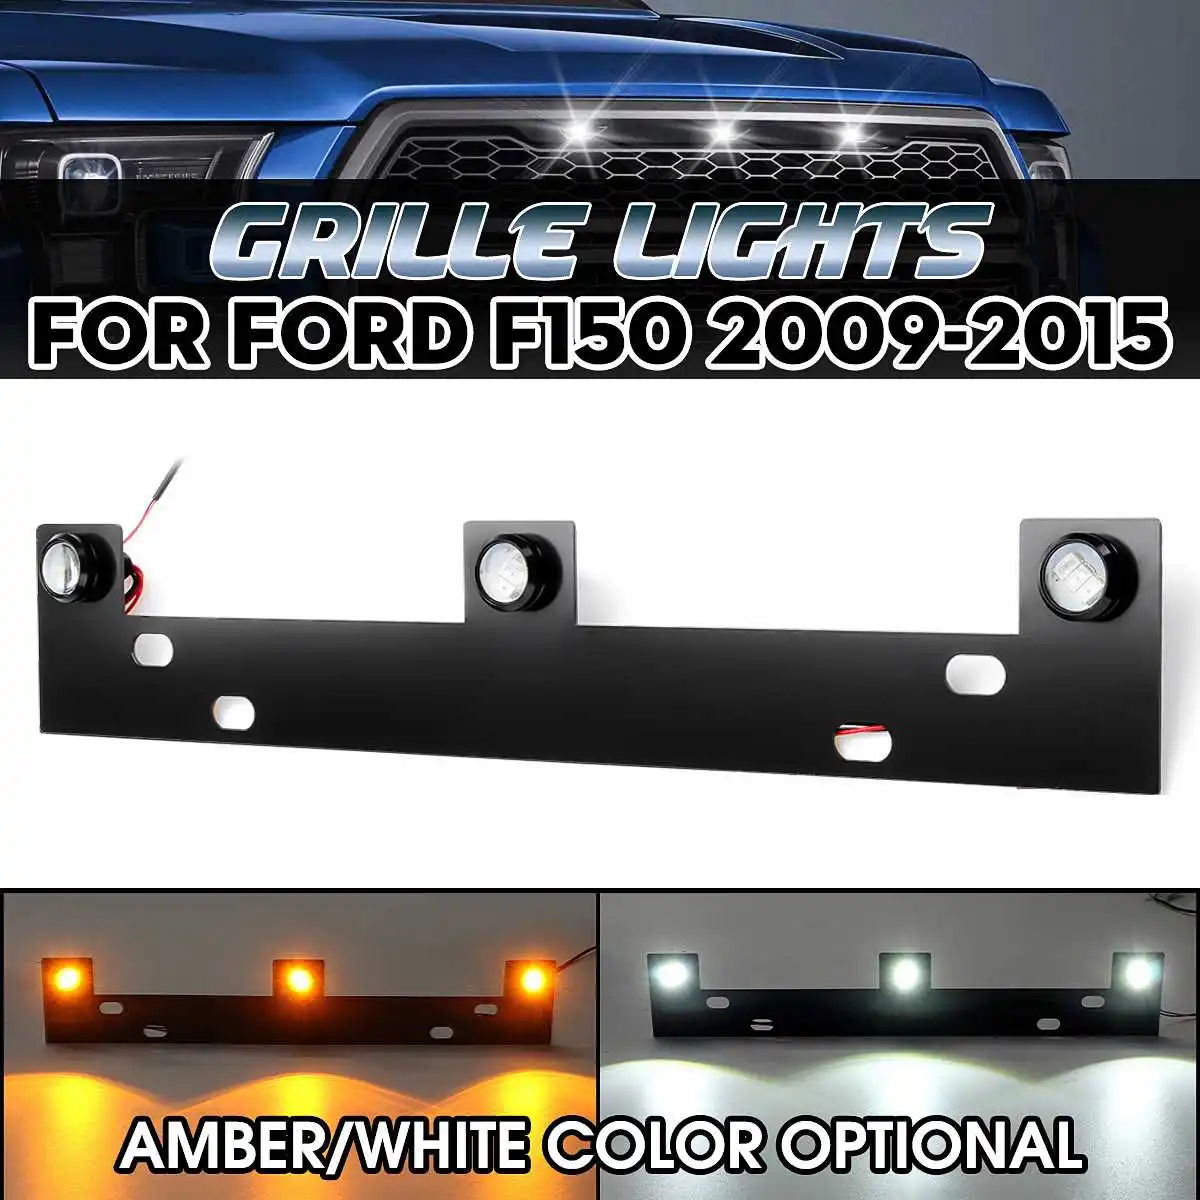 12 В 3 шт решетка света комплект с монтажным кронштейном Янтарный/Белый светодиодный для Ford F150 2009 2010 2011 2012 2013